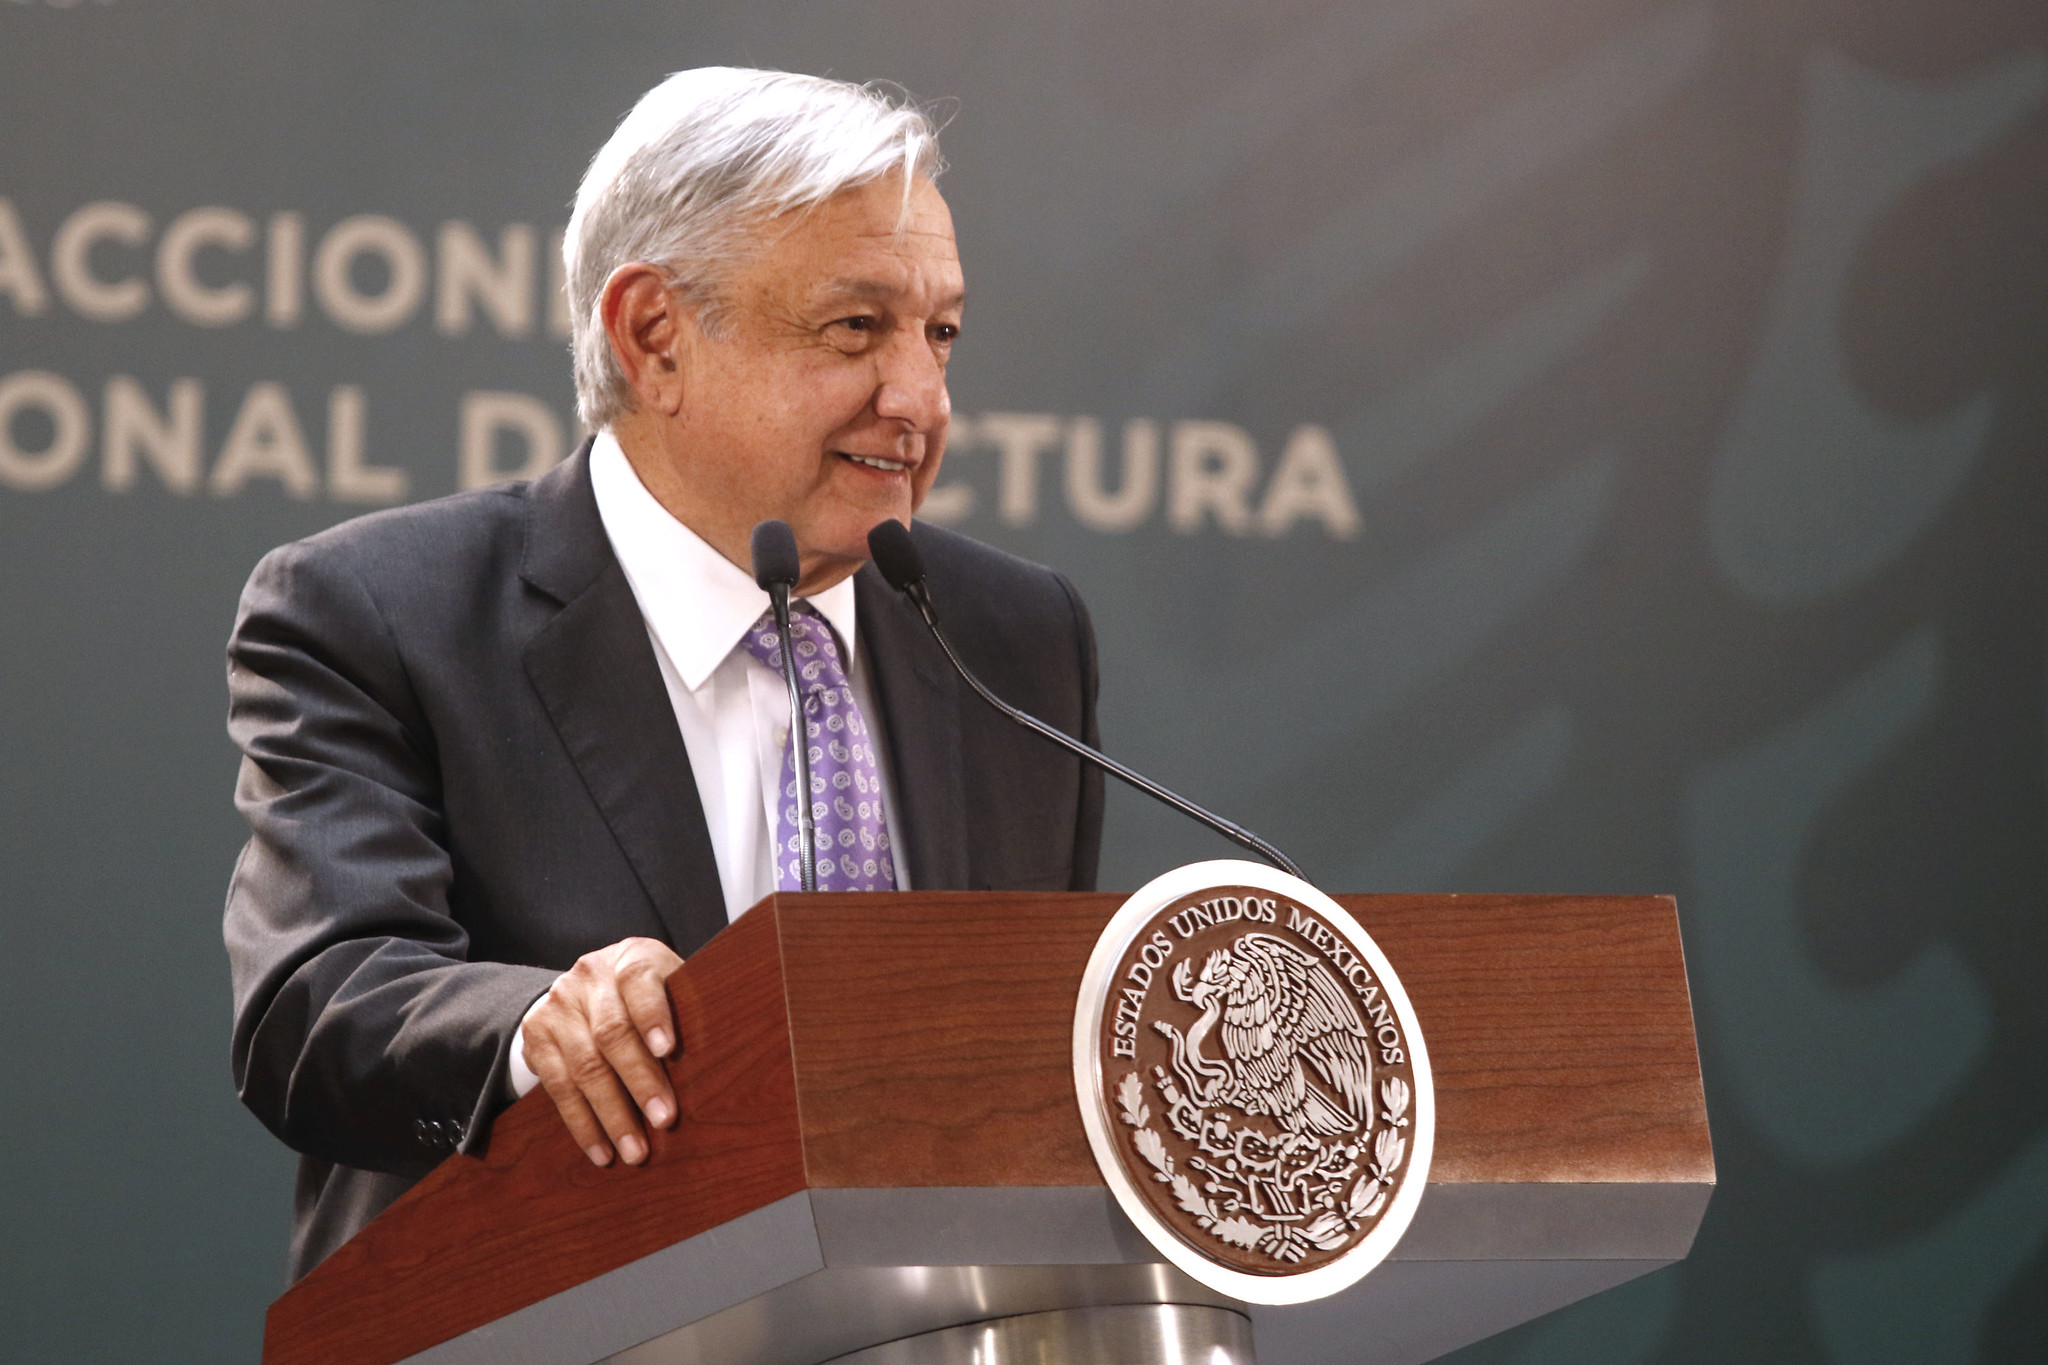 Andrés Manuel López Obrador, Mexikói jelenlegi elnöke. Hosszú neve miatt gyakran csak AMLO-nak nevezik. Obrador elődjeihez képest másképp állna hozzá a drogkartellekhez.